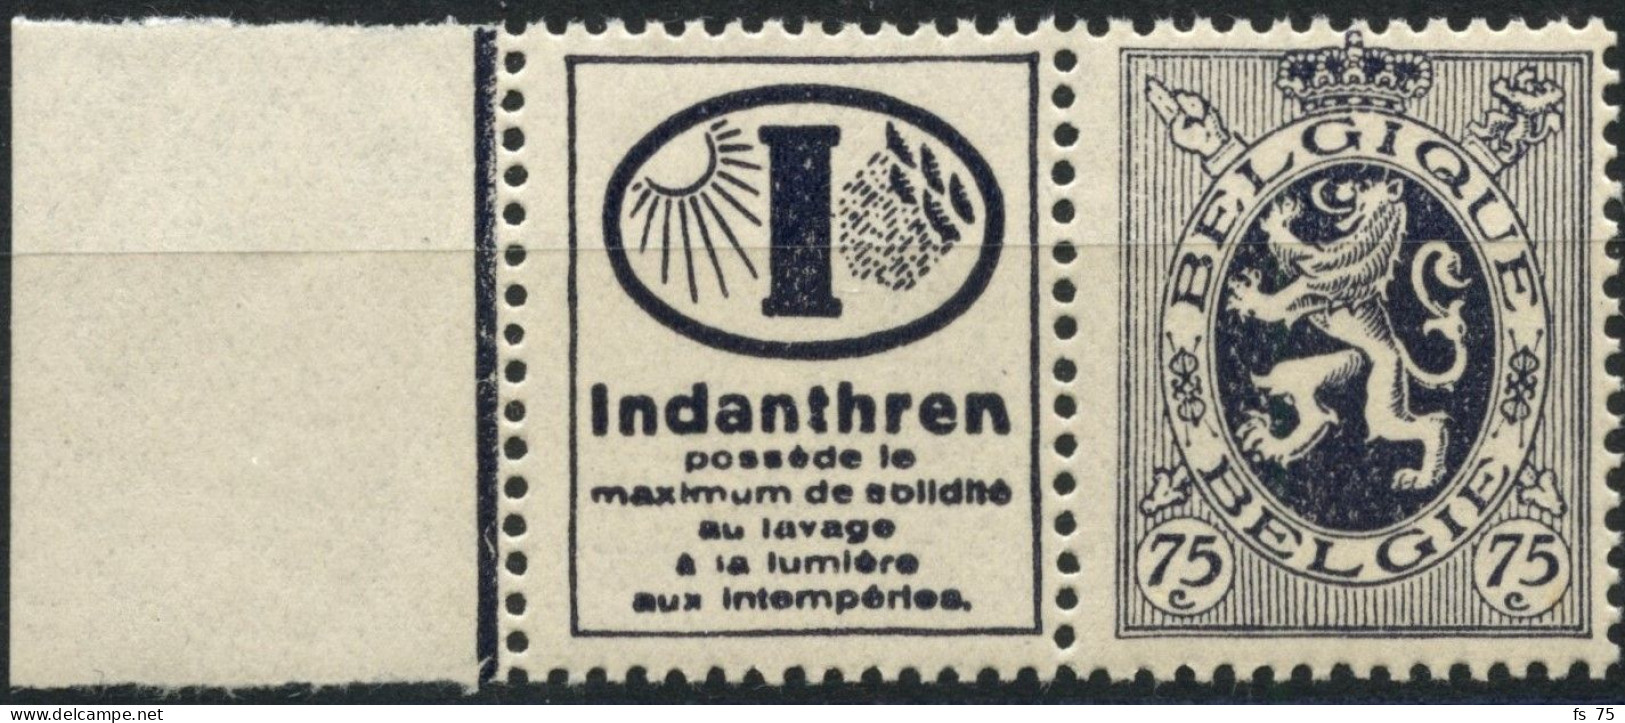 BELGIQUE - COB PU 51 - 75C LION HERALDIQUE TIMBRE PUBLICITAIRE "INDANTHREN" - NEUF - Mint